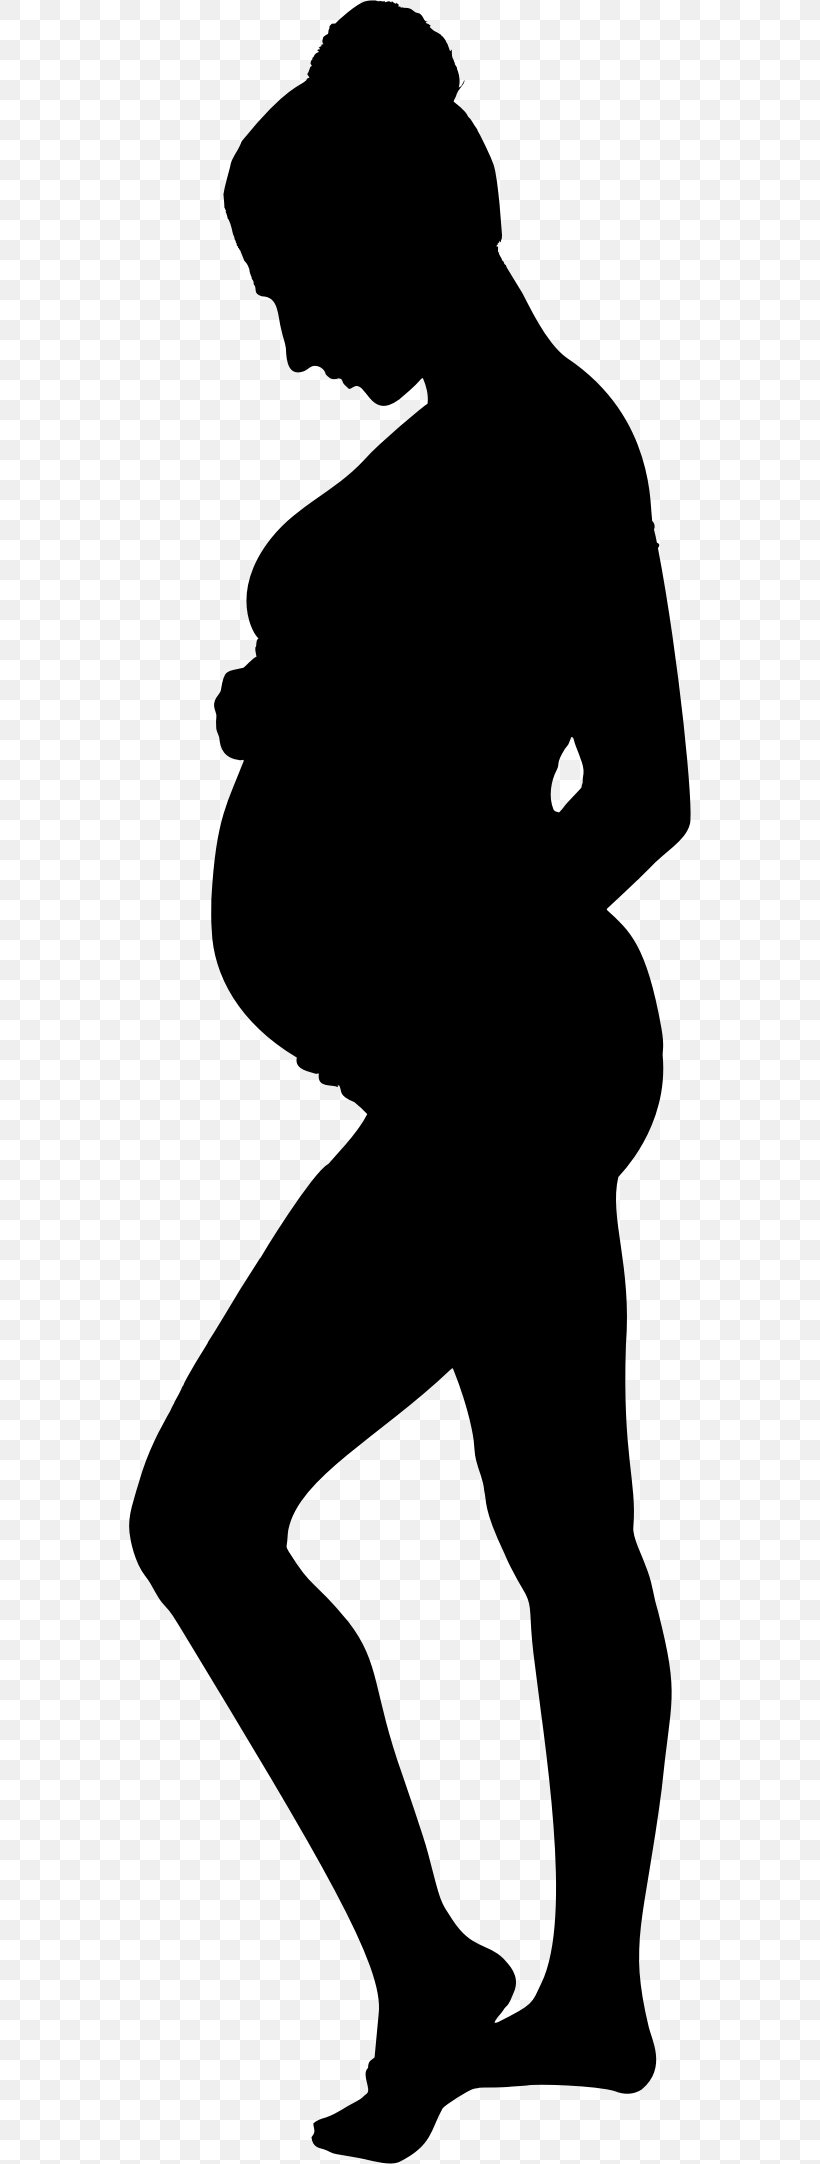 Pregnancy Infertility Woman Fetus Clip Art, PNG, 562x2164px, Pregnancy, Art, Birth, Black, Black And White Download Free